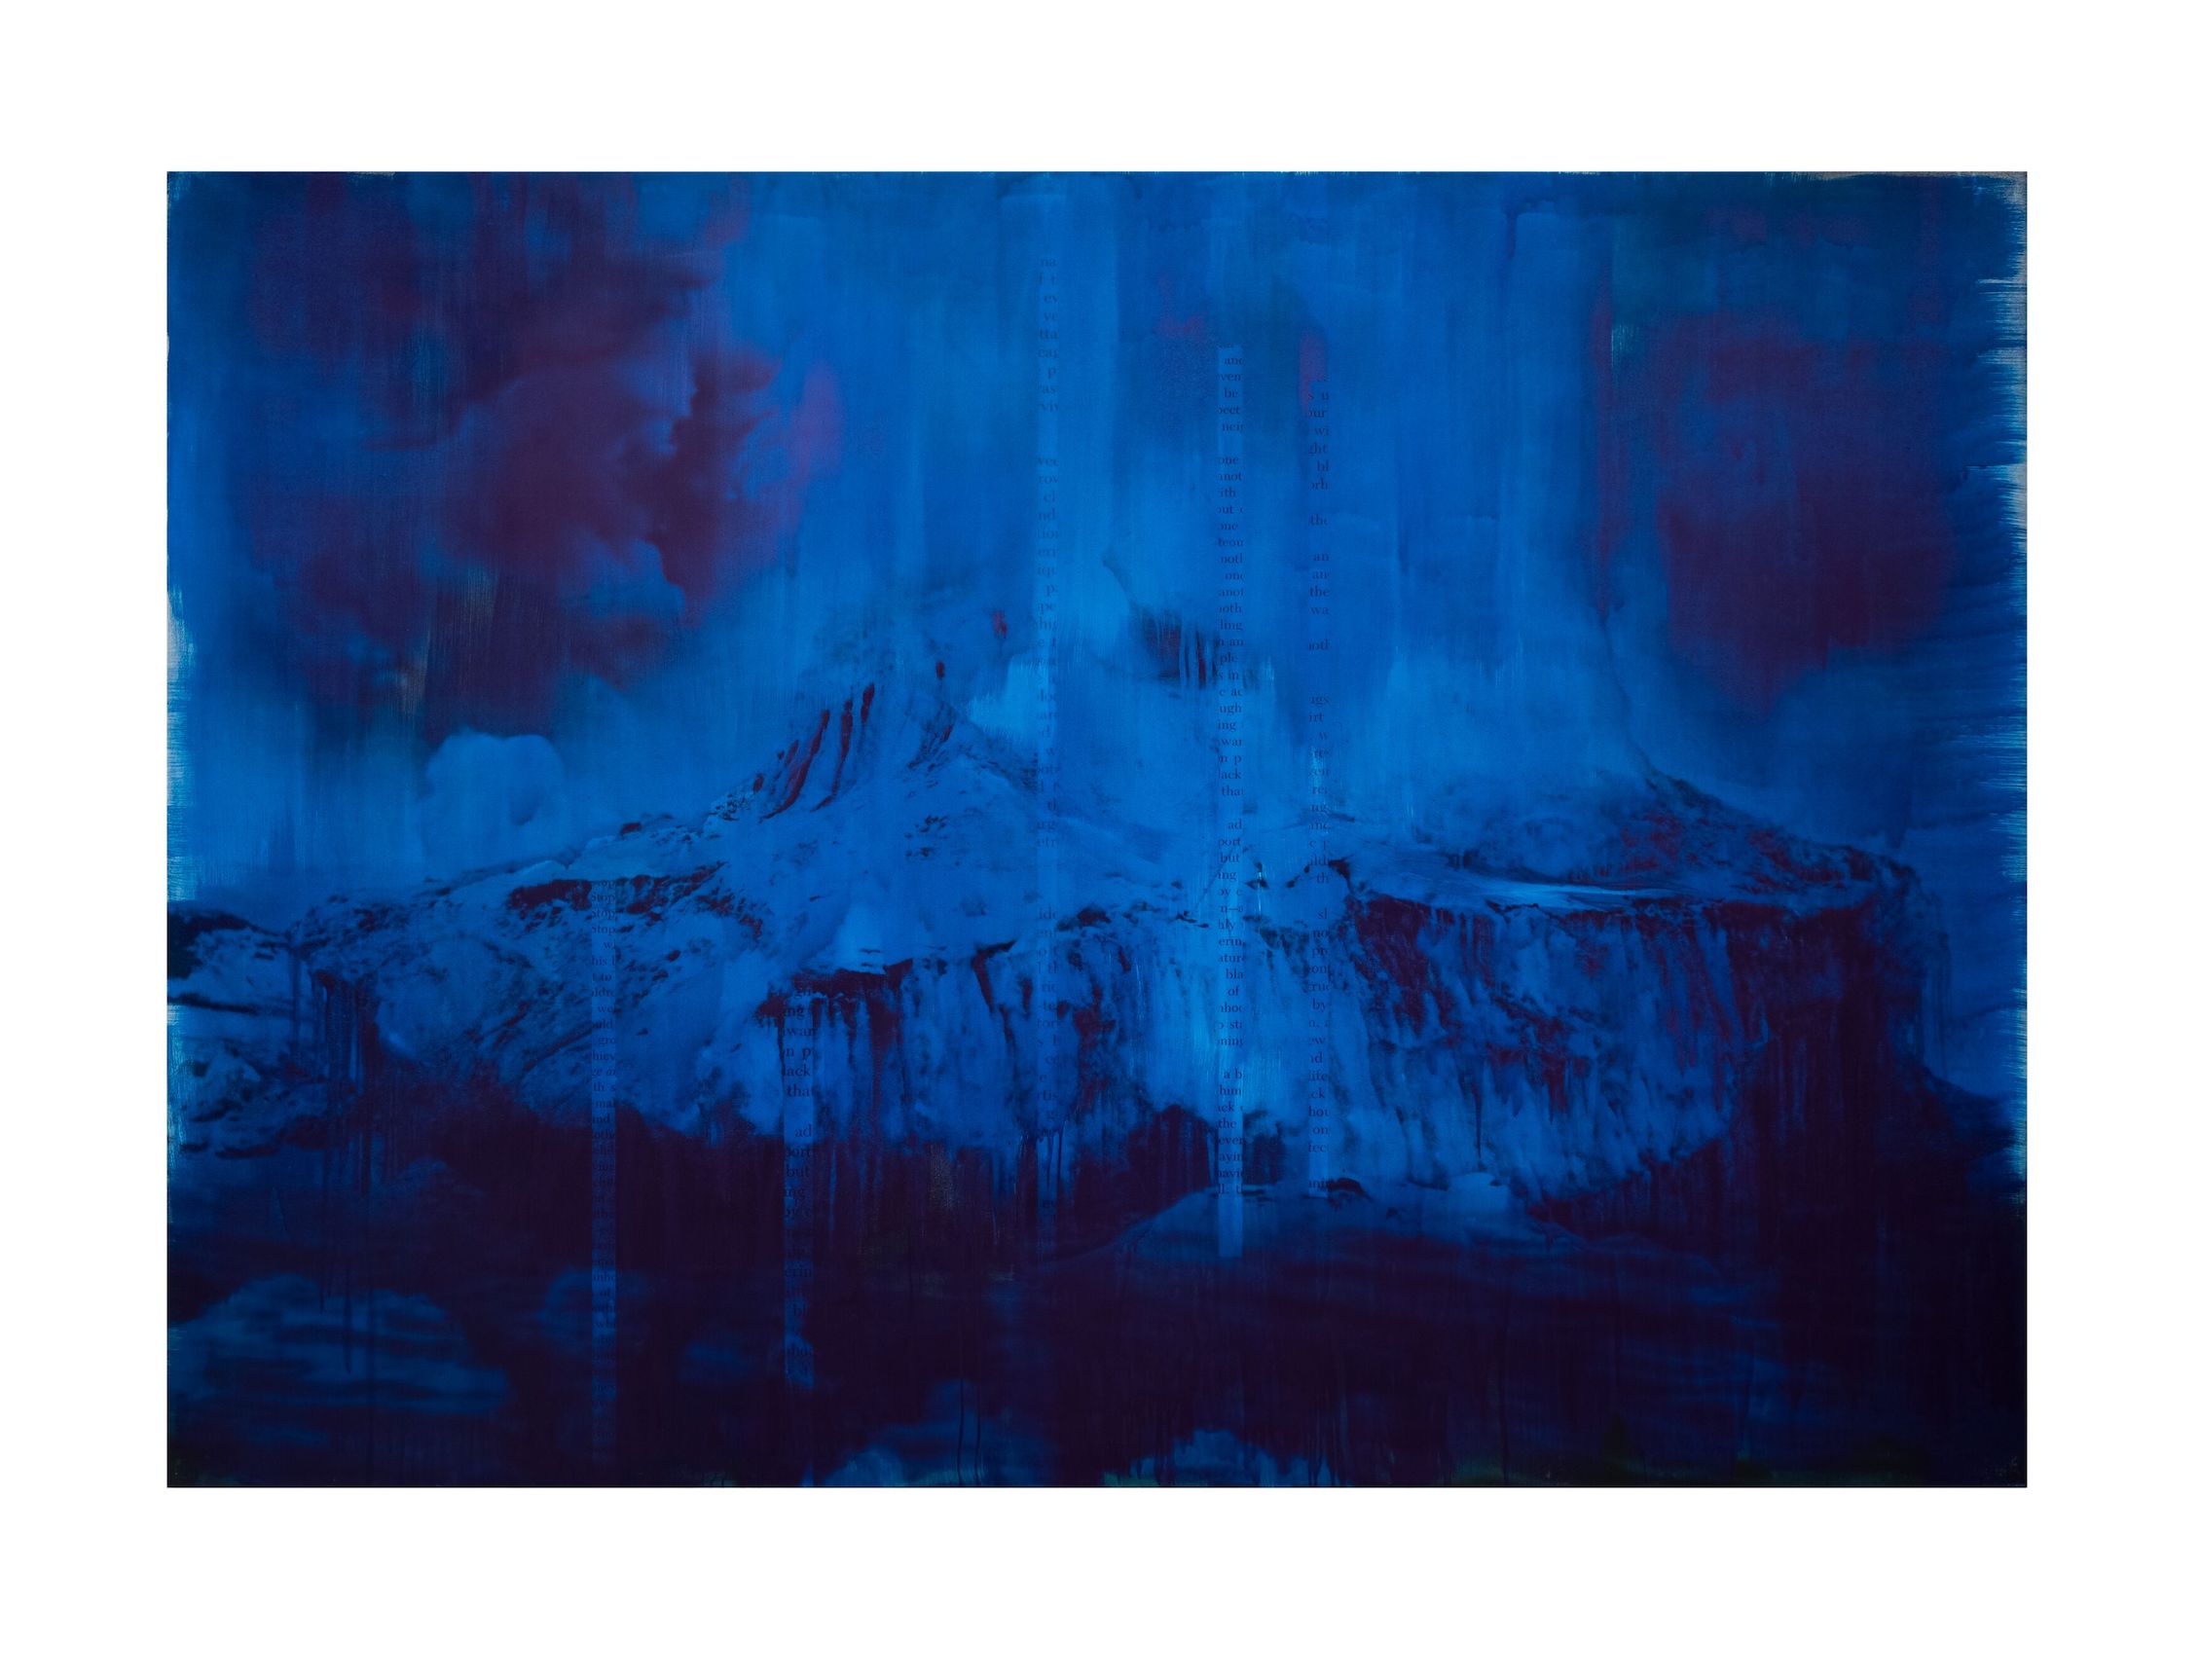 Lorna Simpson, 'Blue Dark,' 2018. Ink and screenprint on gessoed fiberglass, 259.1 x 365.8 x 3.5 cm / 102 x 144 x 1 3/8 in.